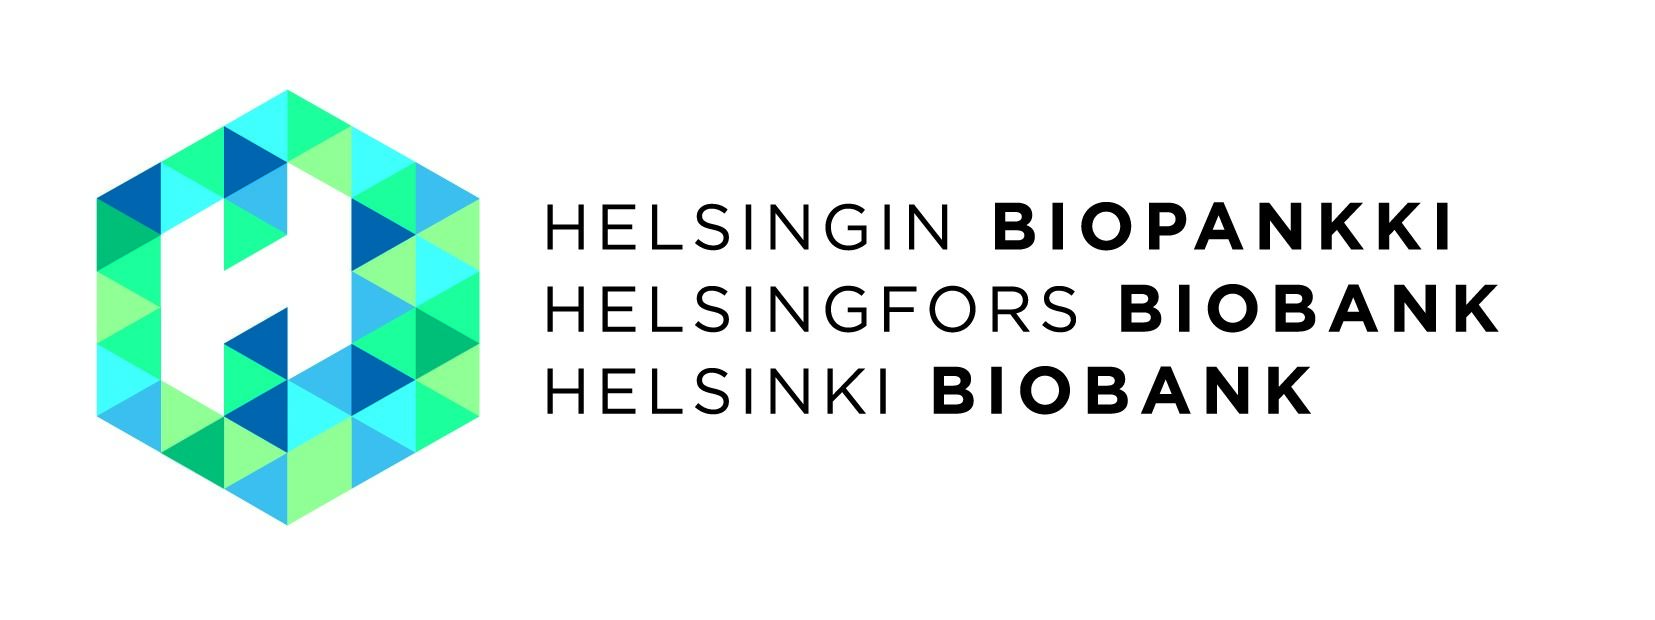 Helsingin biopankki logo